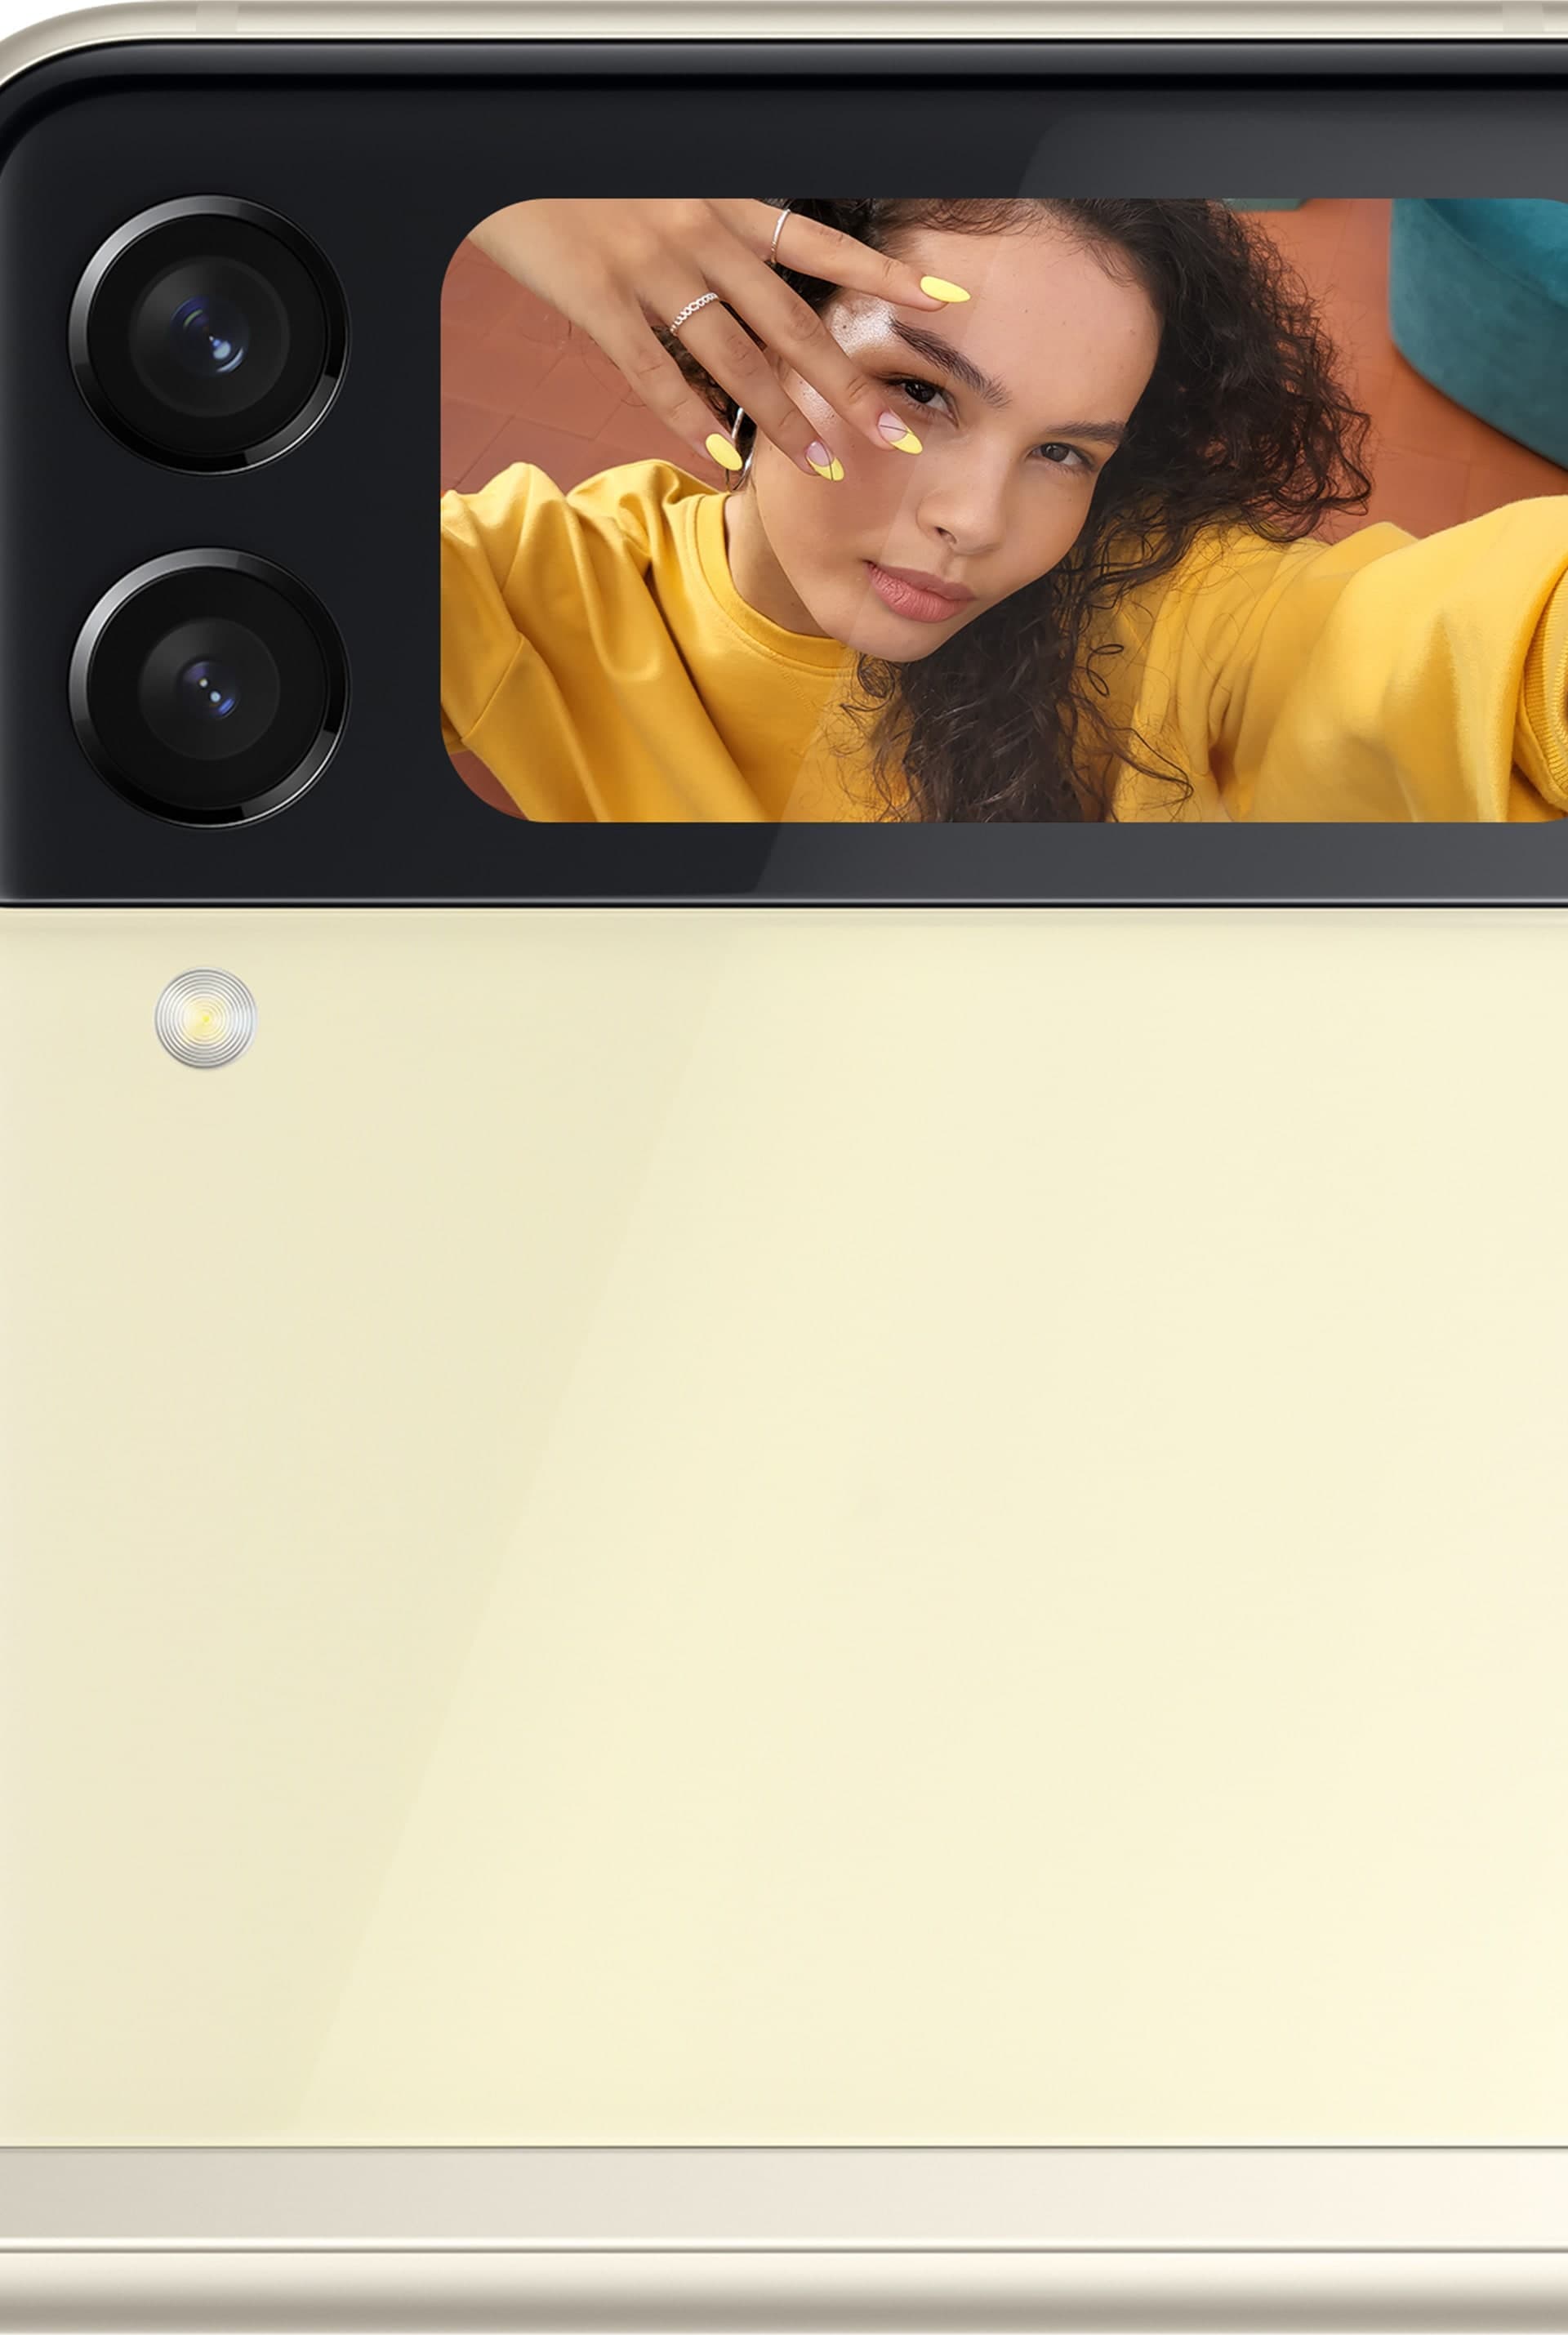 Die Vorderseite eines Galaxy Z Flip3 5G mit einer Frau, die ein Selfie aufnimmt, das auf dem Frontdisplay zu sehen ist.